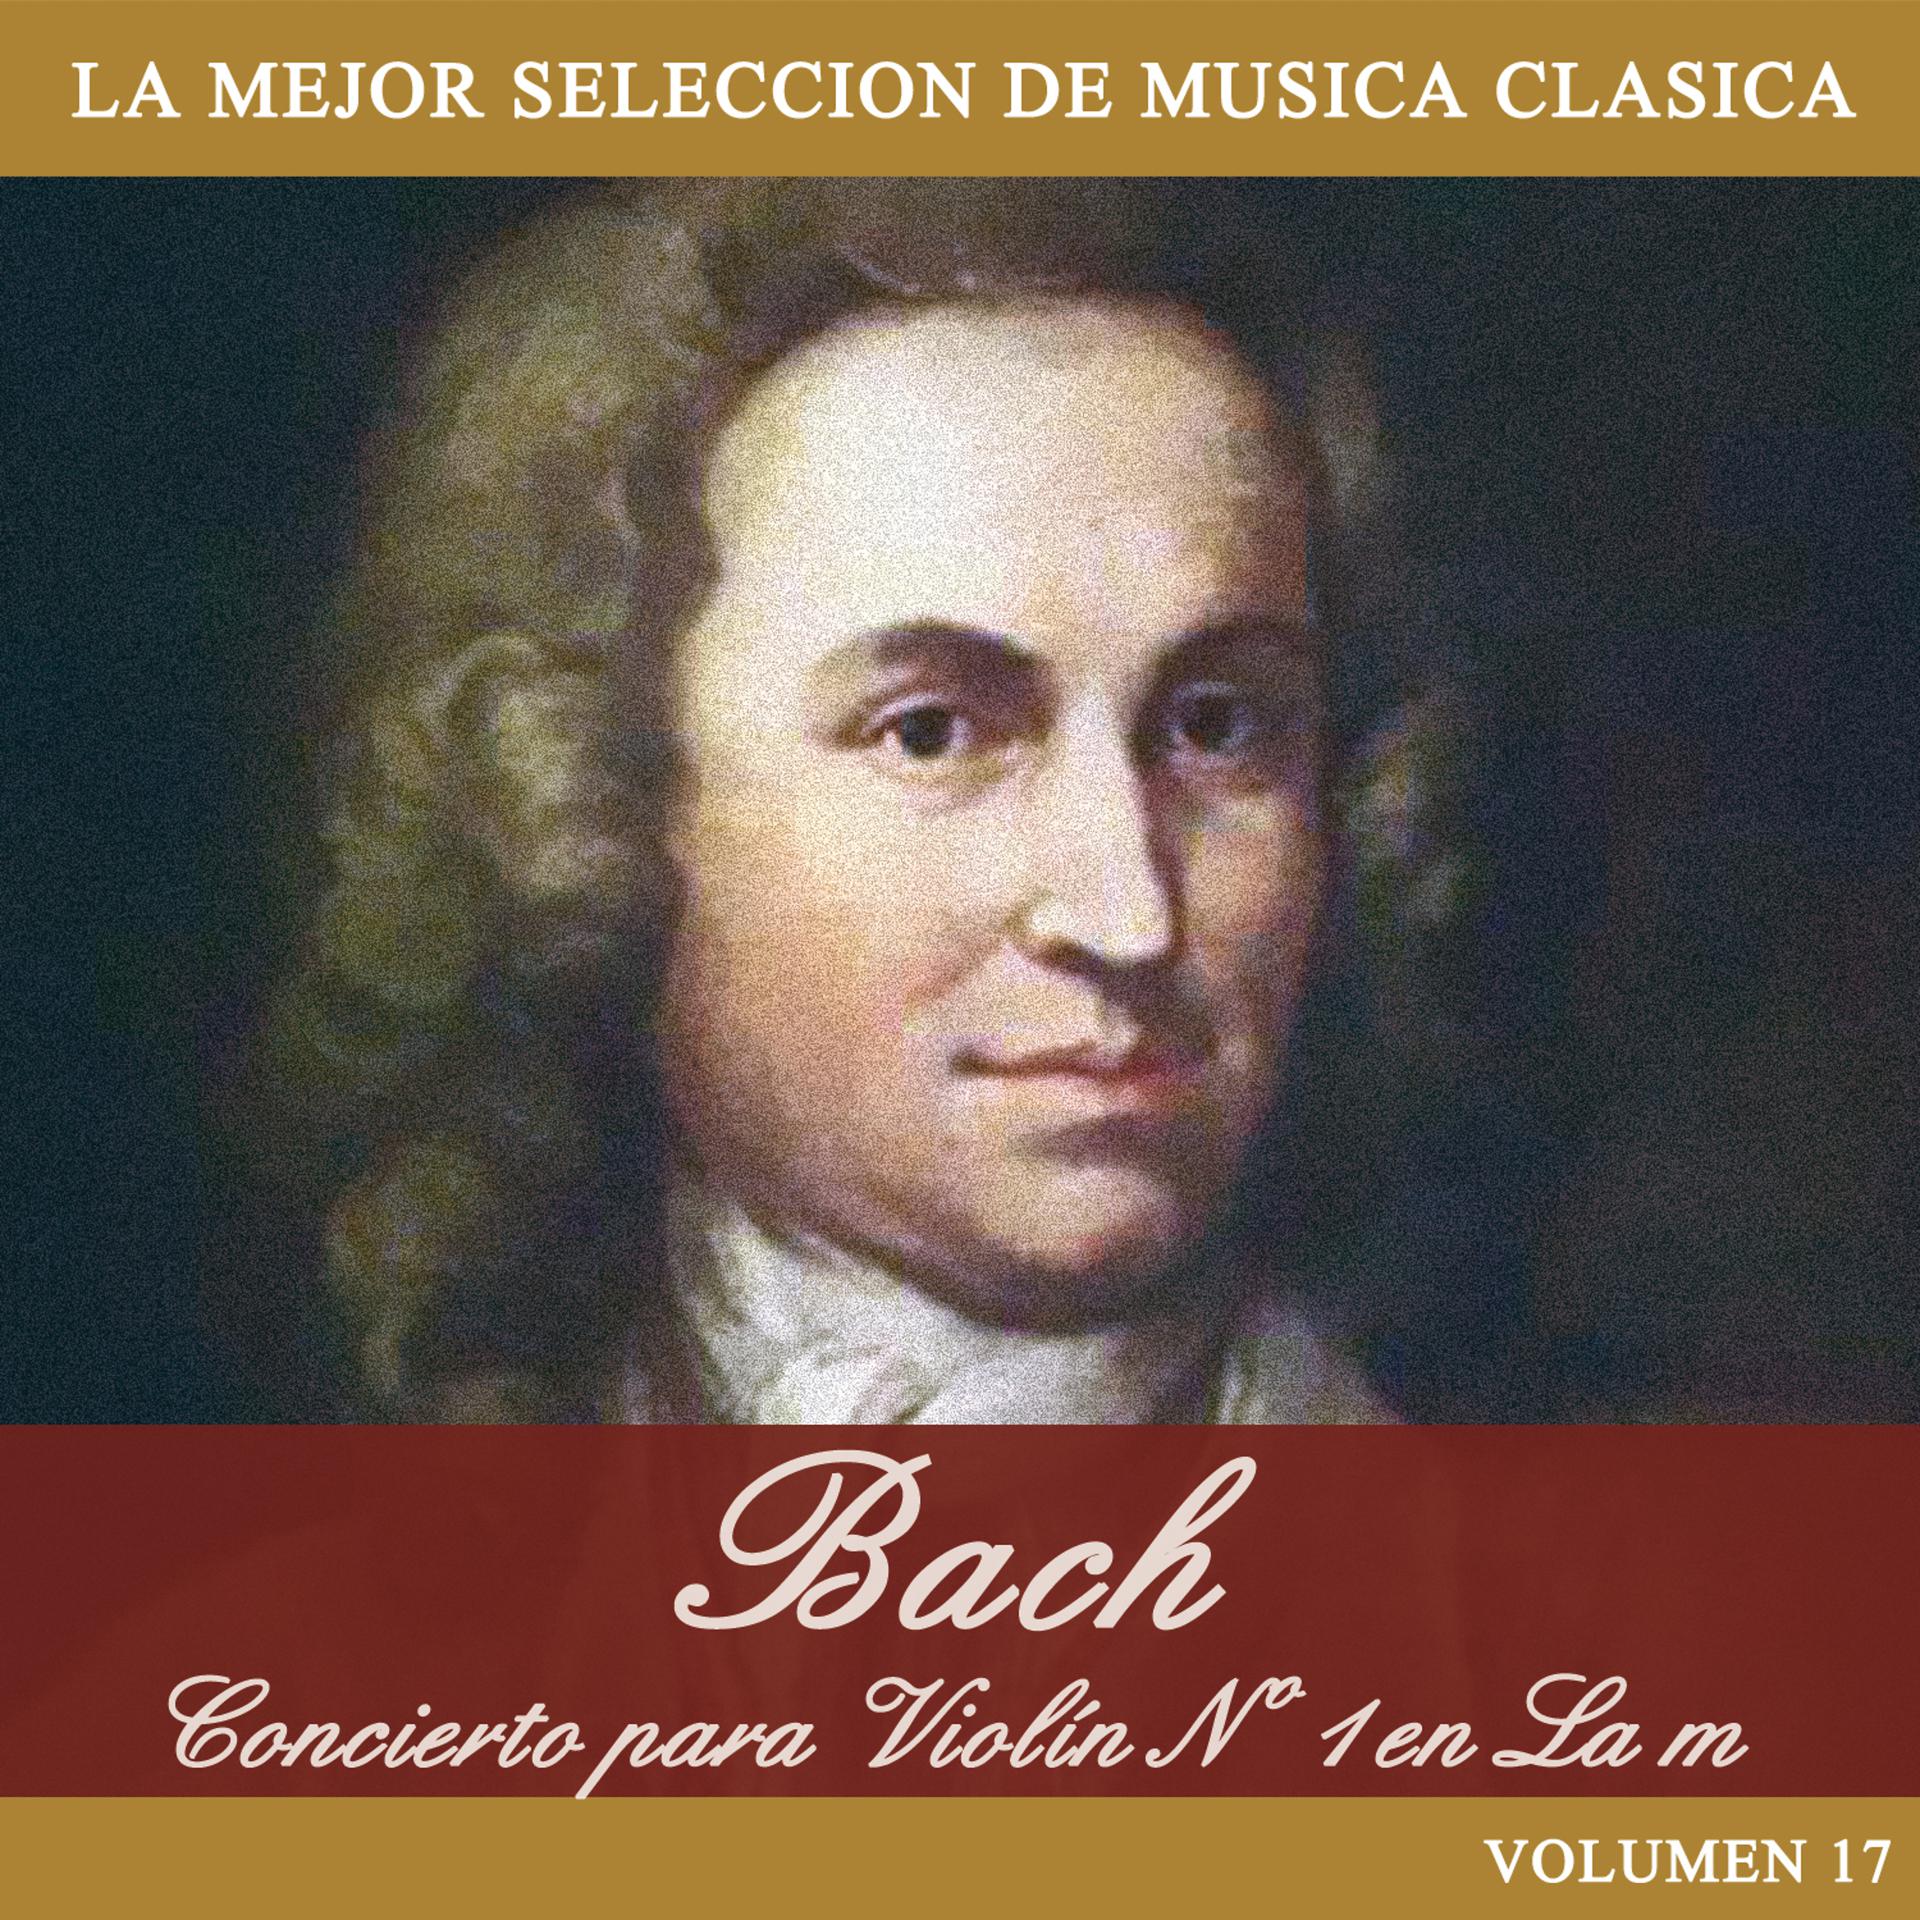 Постер альбома Bach: Concierto para Violin No. 1 en La m